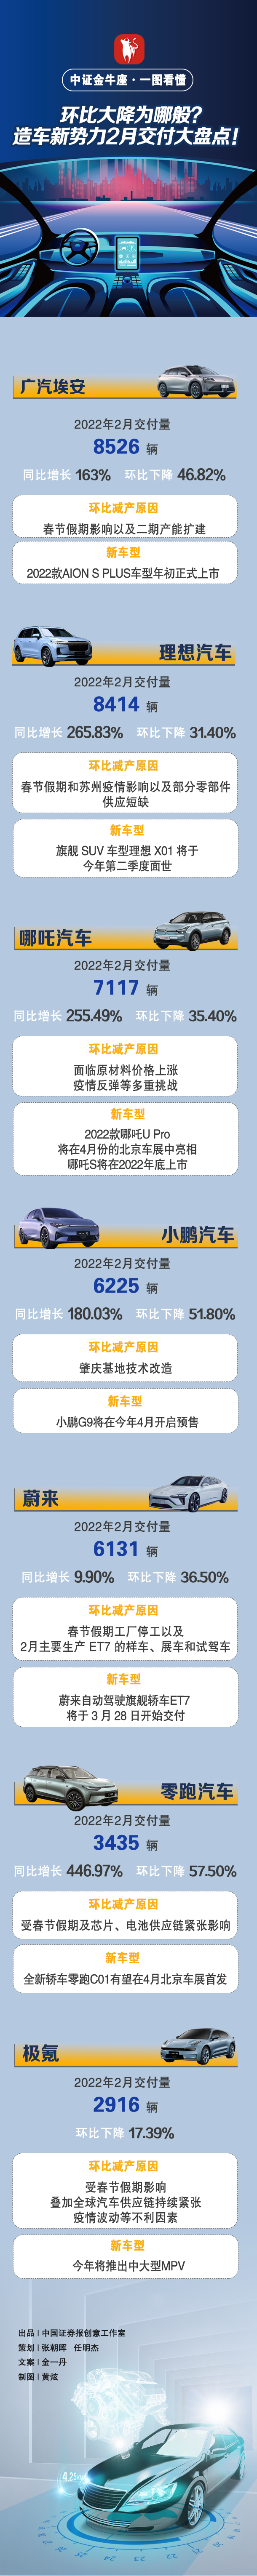 造车新势力2月成绩单公布 广汽埃安交付量领跑